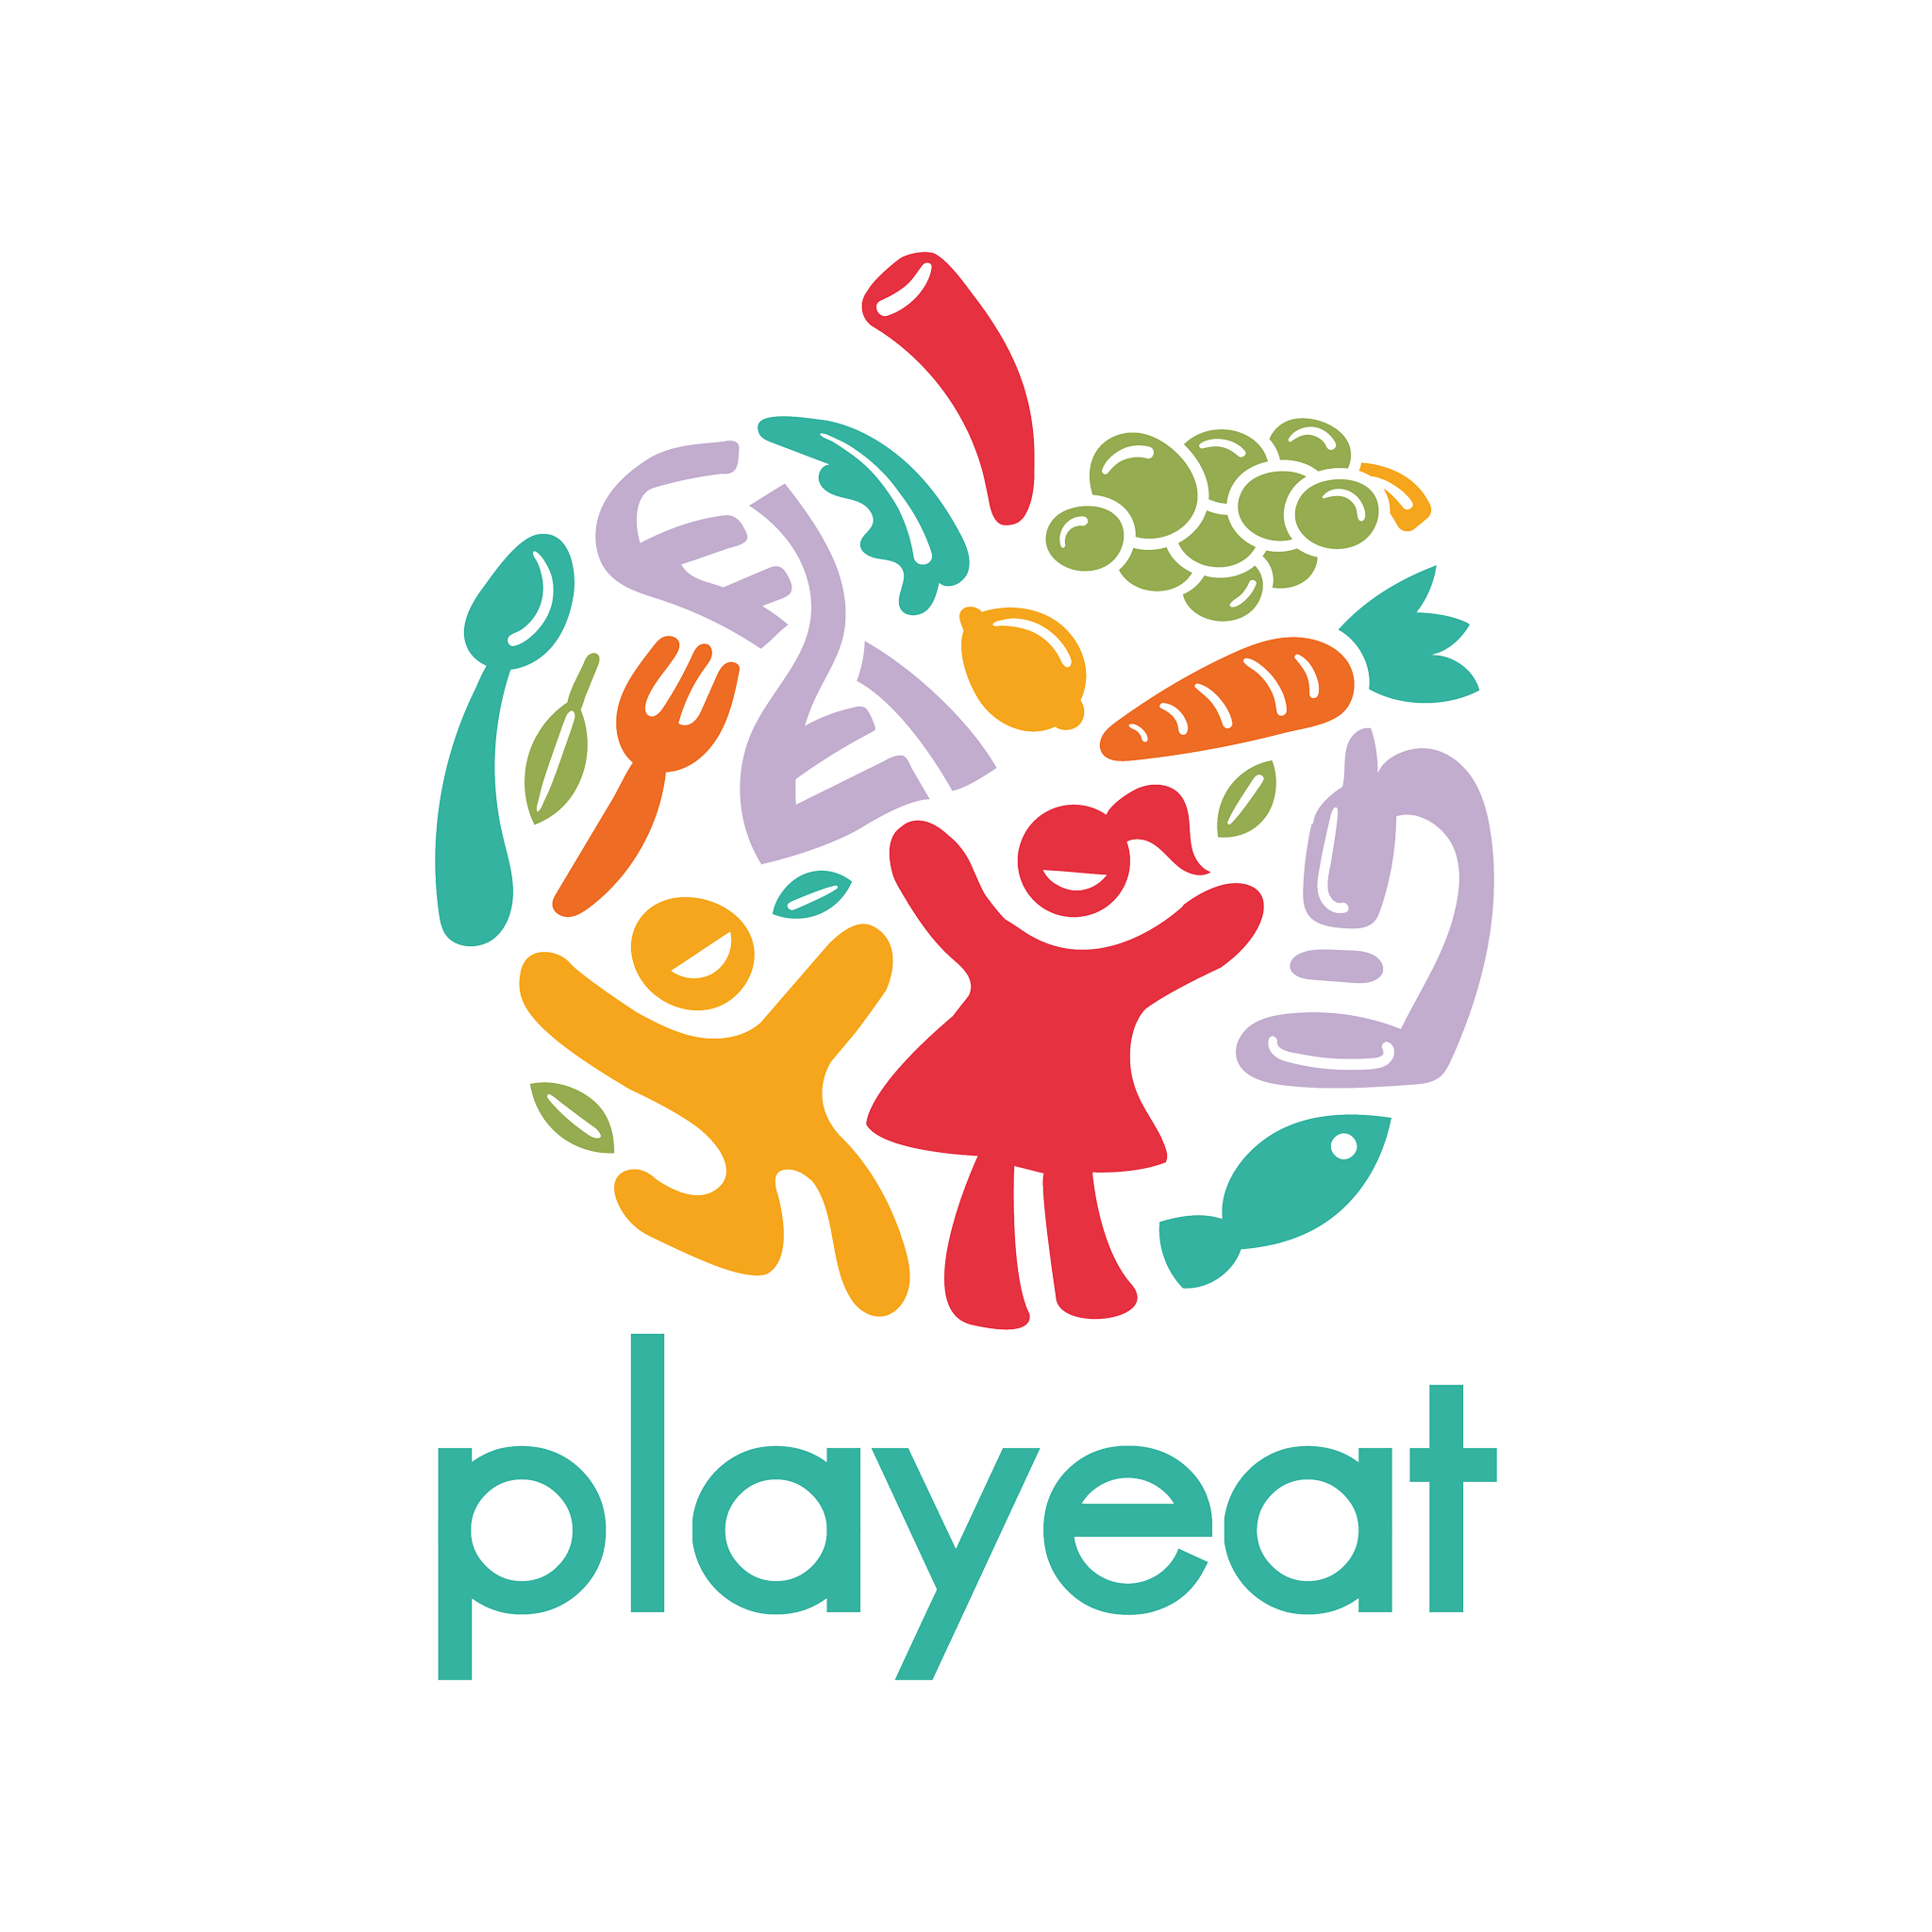 Playeat logo